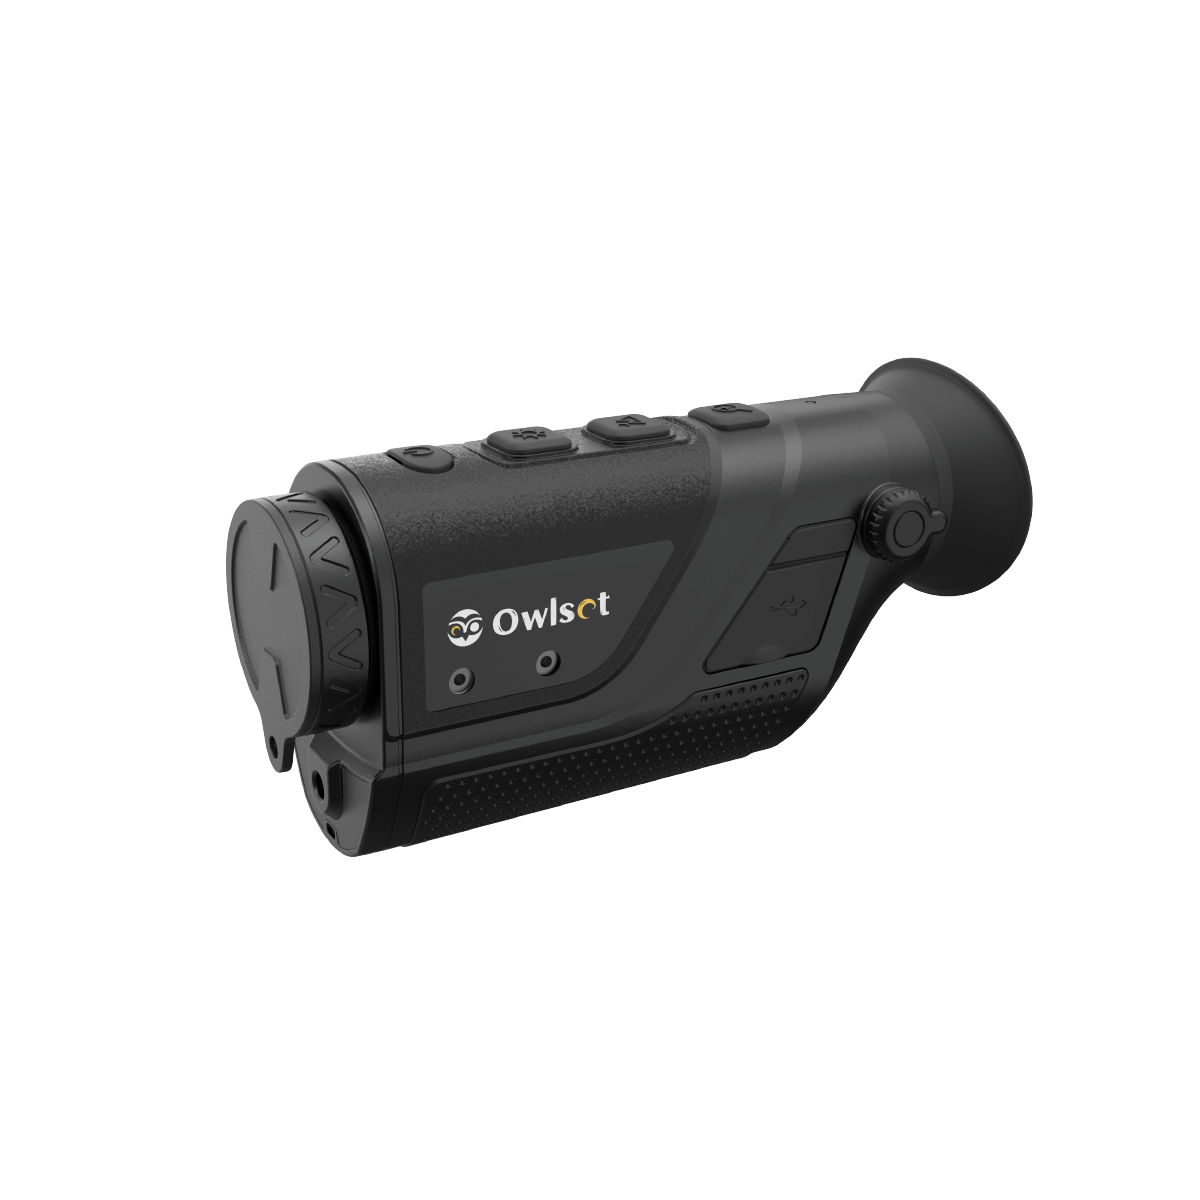 OwlSet MCC10 Handheld Thermal Imaging Monocular